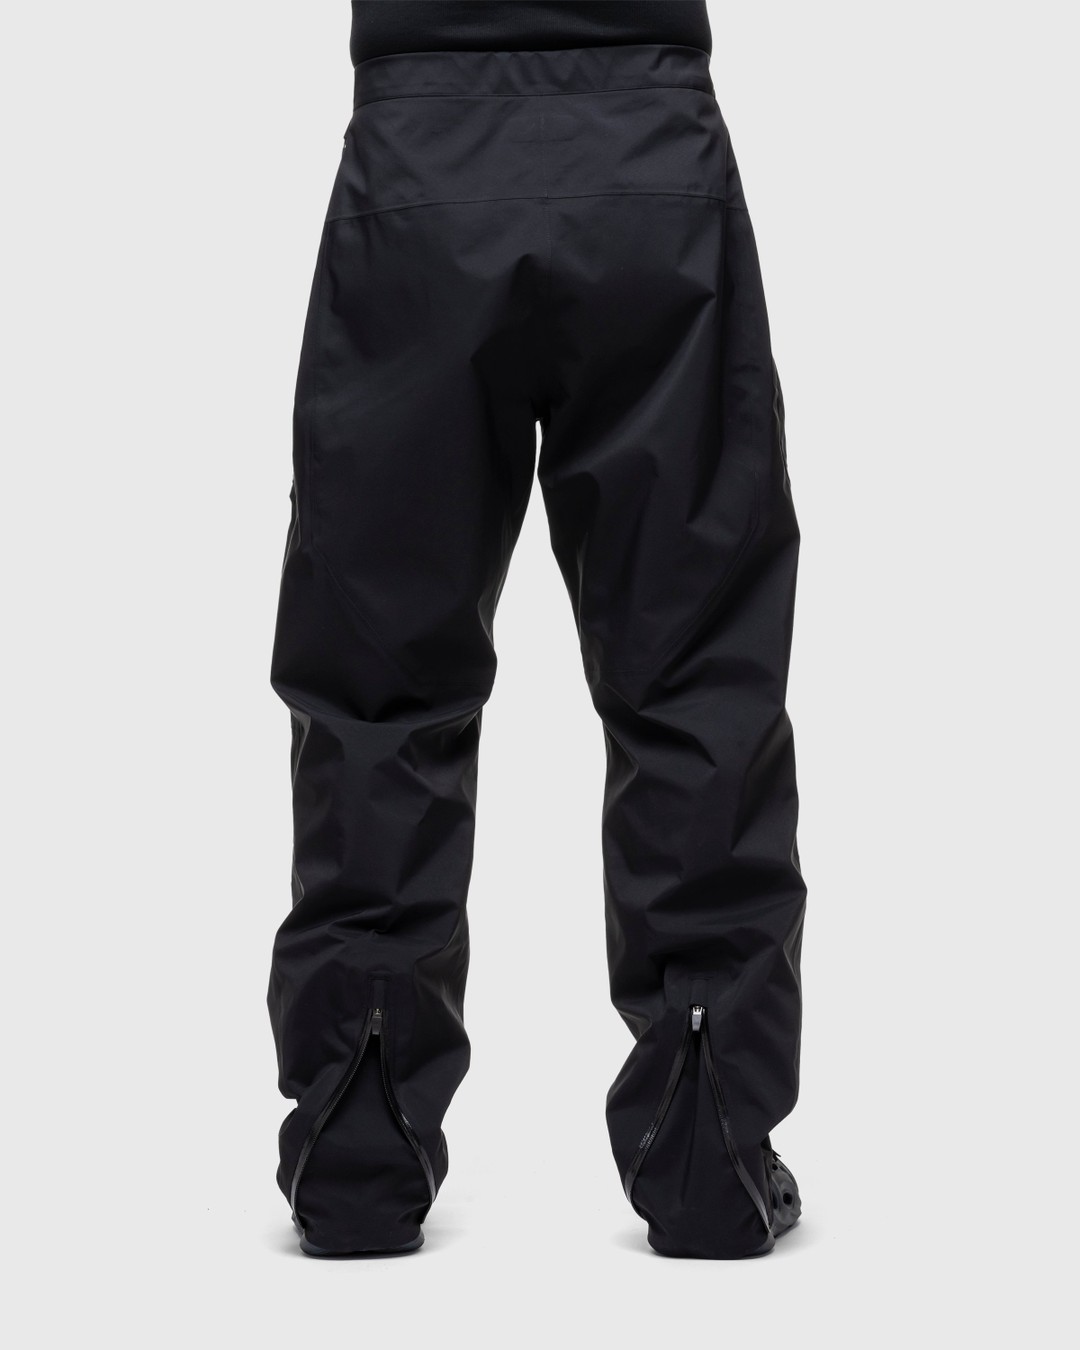 ACRONYM – P43-GT Pant Black - Active Pants - Black - Image 3